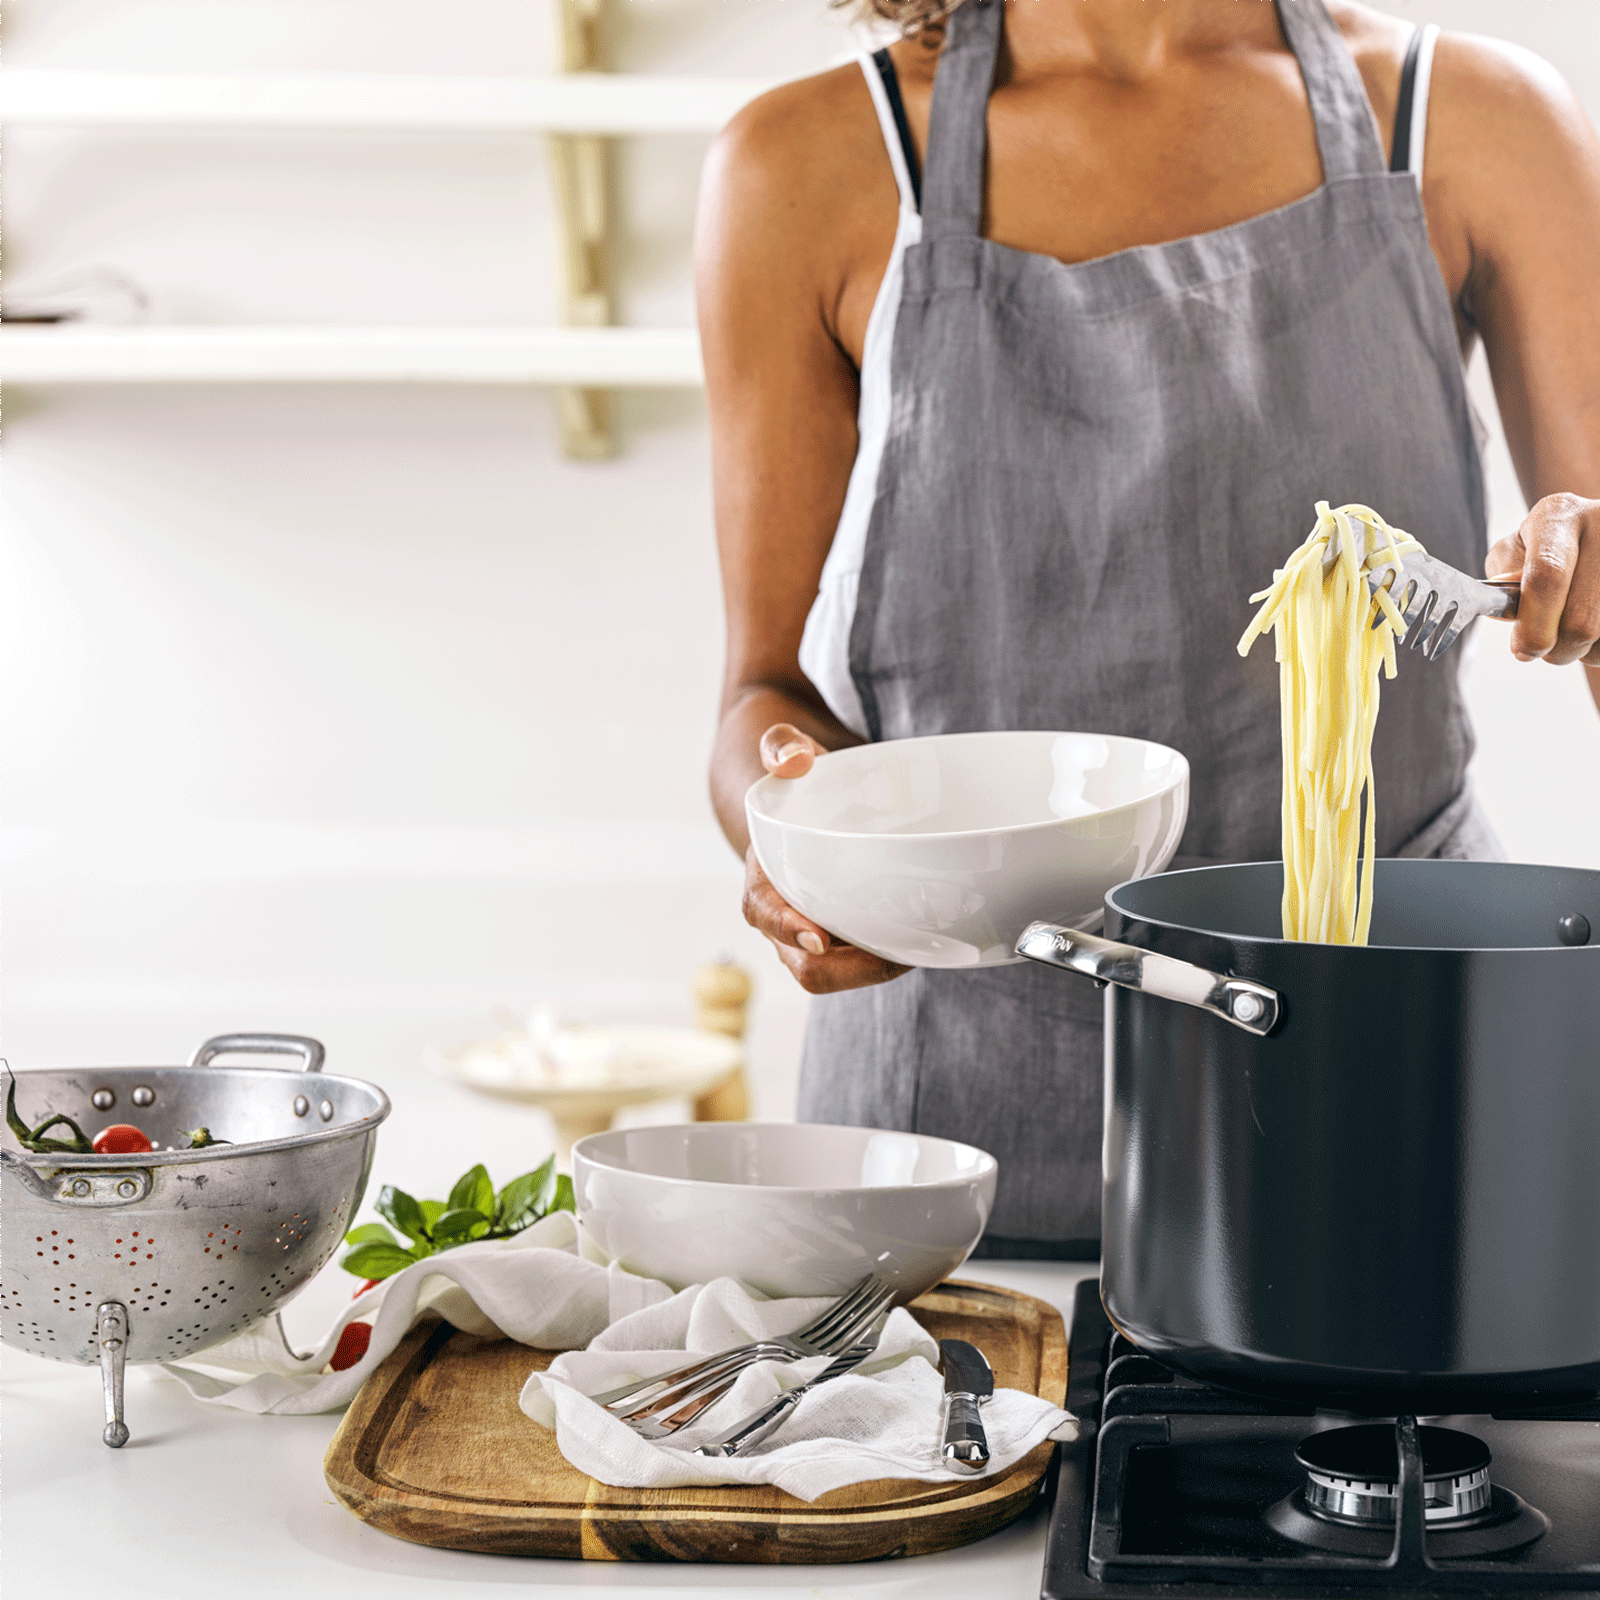 Venice Pro Kookpot 24cm grijs op vuur met pasta